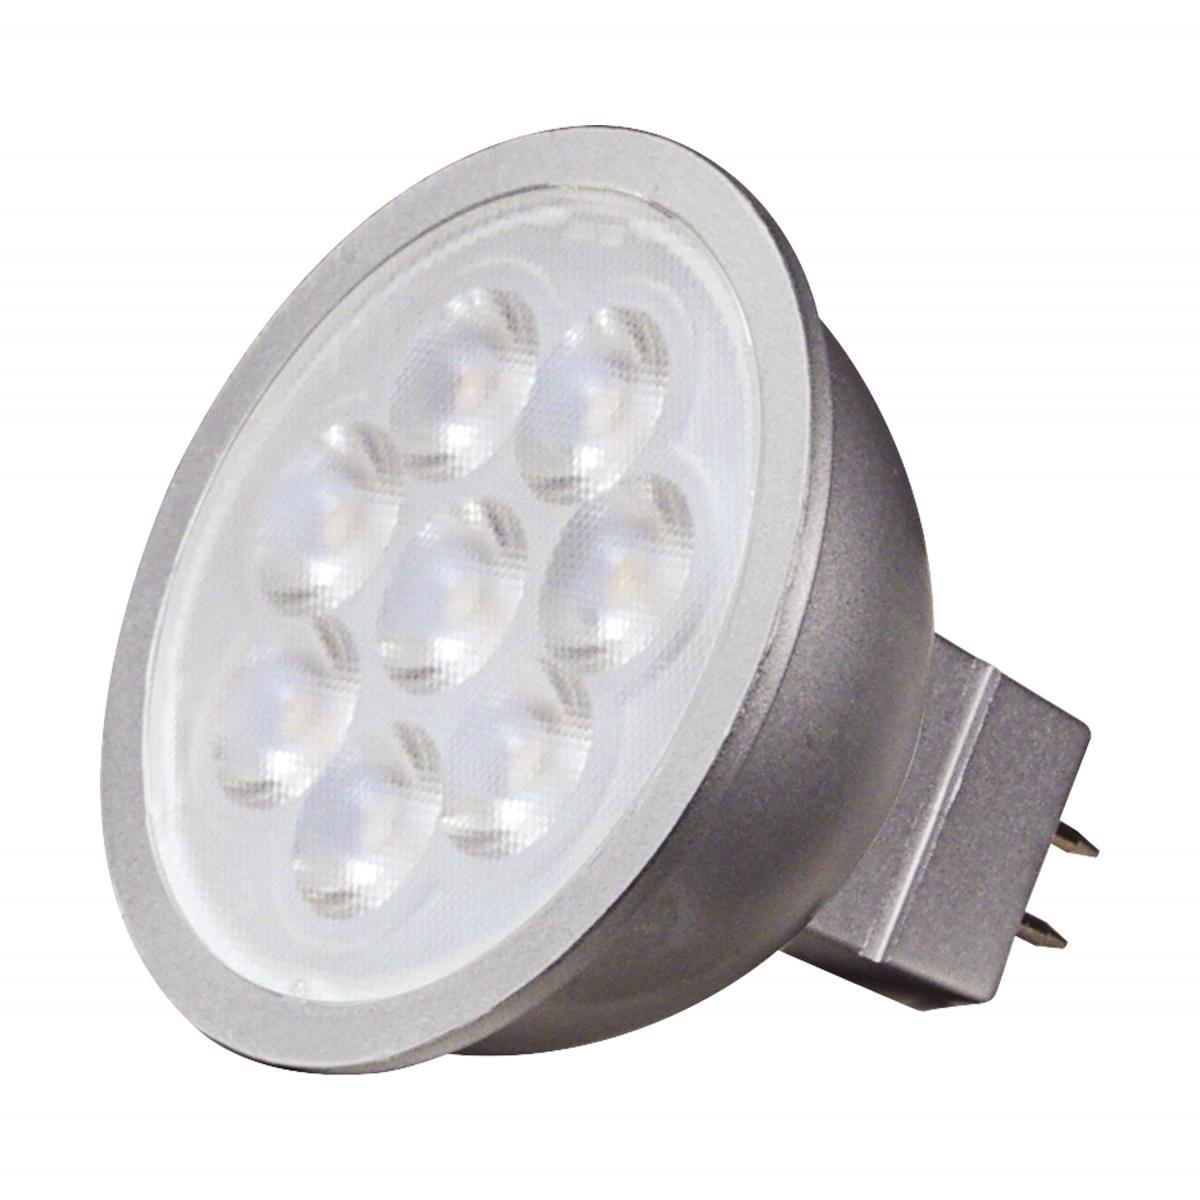 MR16 Reflector LED bulb, 6 watt, 450 Lumens, 3000K, GU5.3 Base, 25 Deg. Flood - Bees Lighting